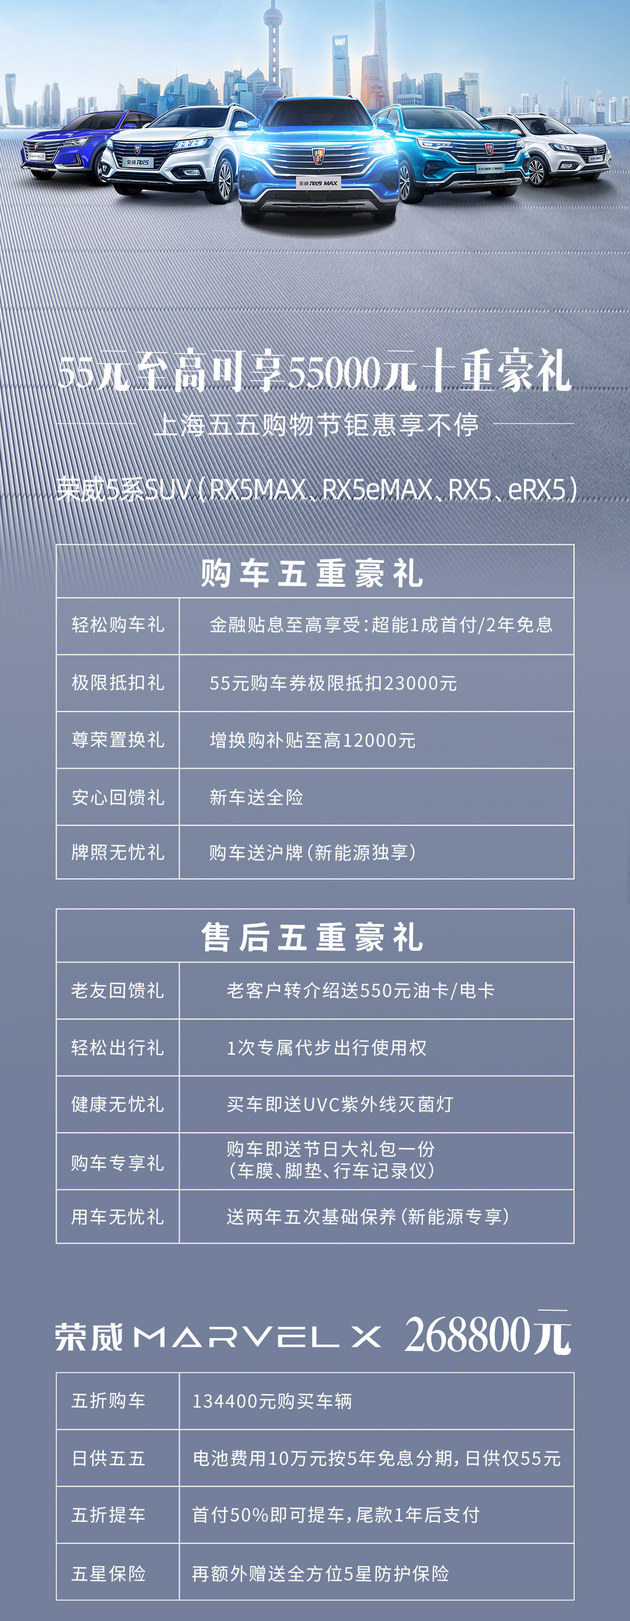 荣威RX5 PLUS开启预售 12.28-13.98万